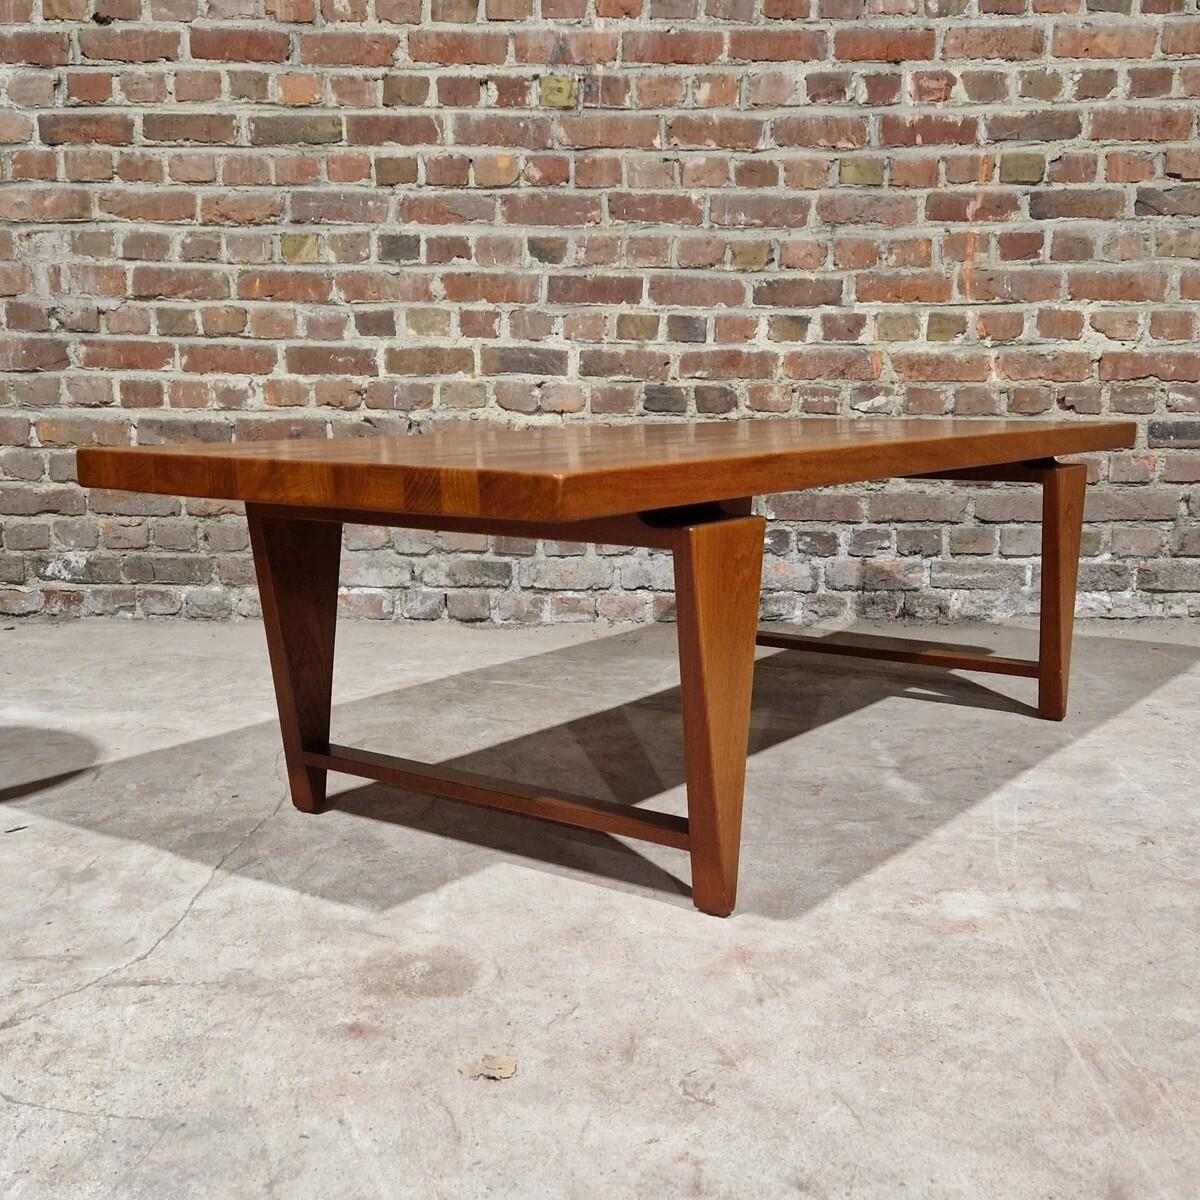 Table basse en teck massif conçue par Illum Wikkelsø au Danemark. Le bois présente une belle veinure sur le plateau de la table, et le pied épais donne à la table un aspect géométrique unique. 